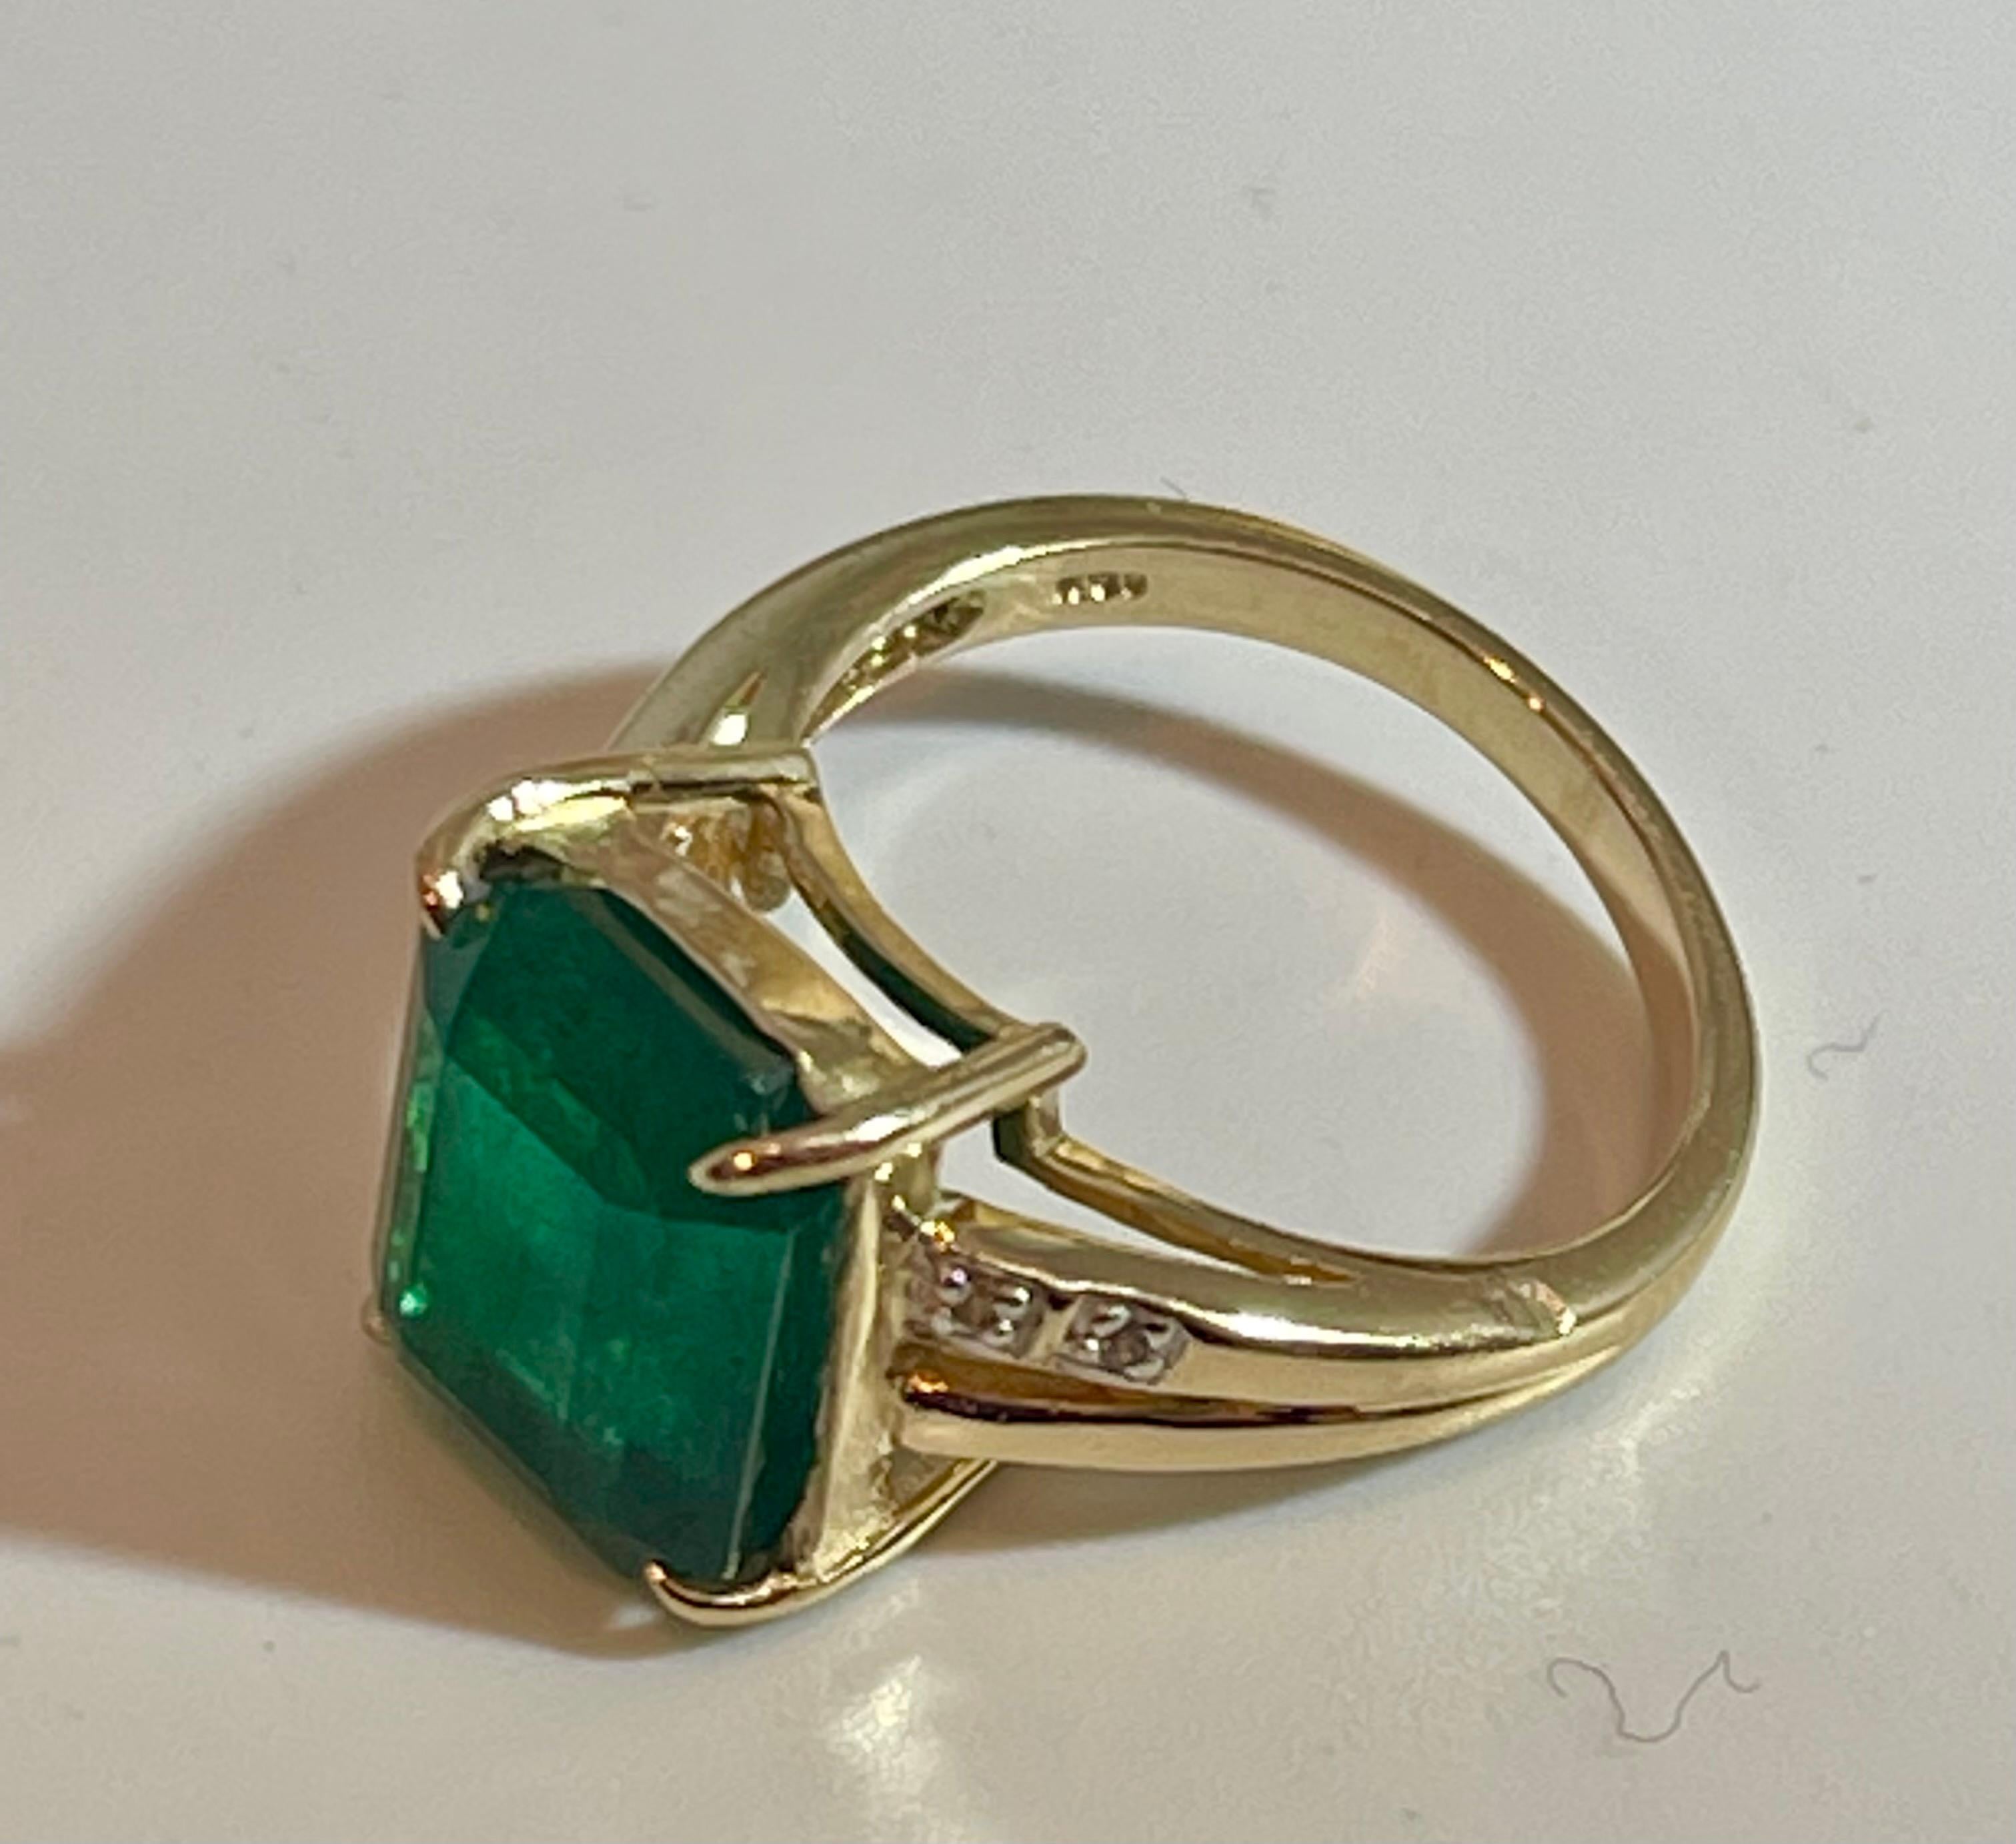 4.5 Carat Natural Emerald Cut Emerald Ring 14 Karat Yellow Gold 7